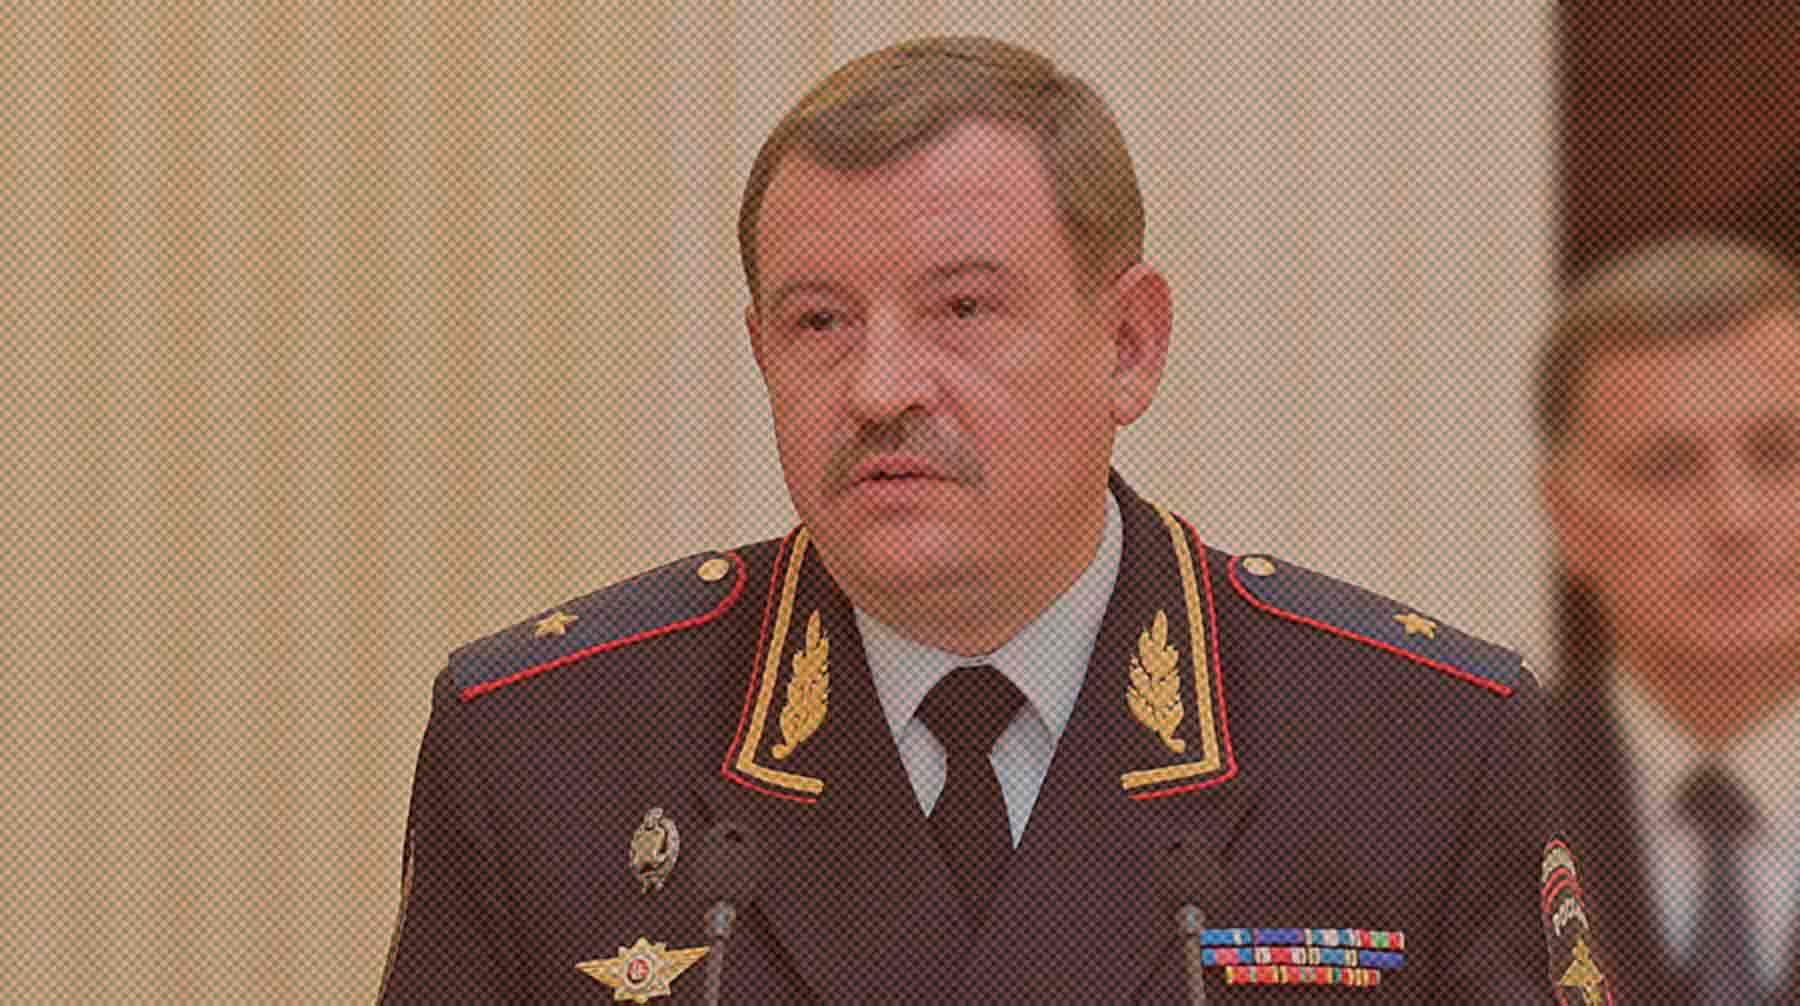 Dailystorm - Силовики задержали помощника главы МВД генерала Умнова по обвинению в коррупции